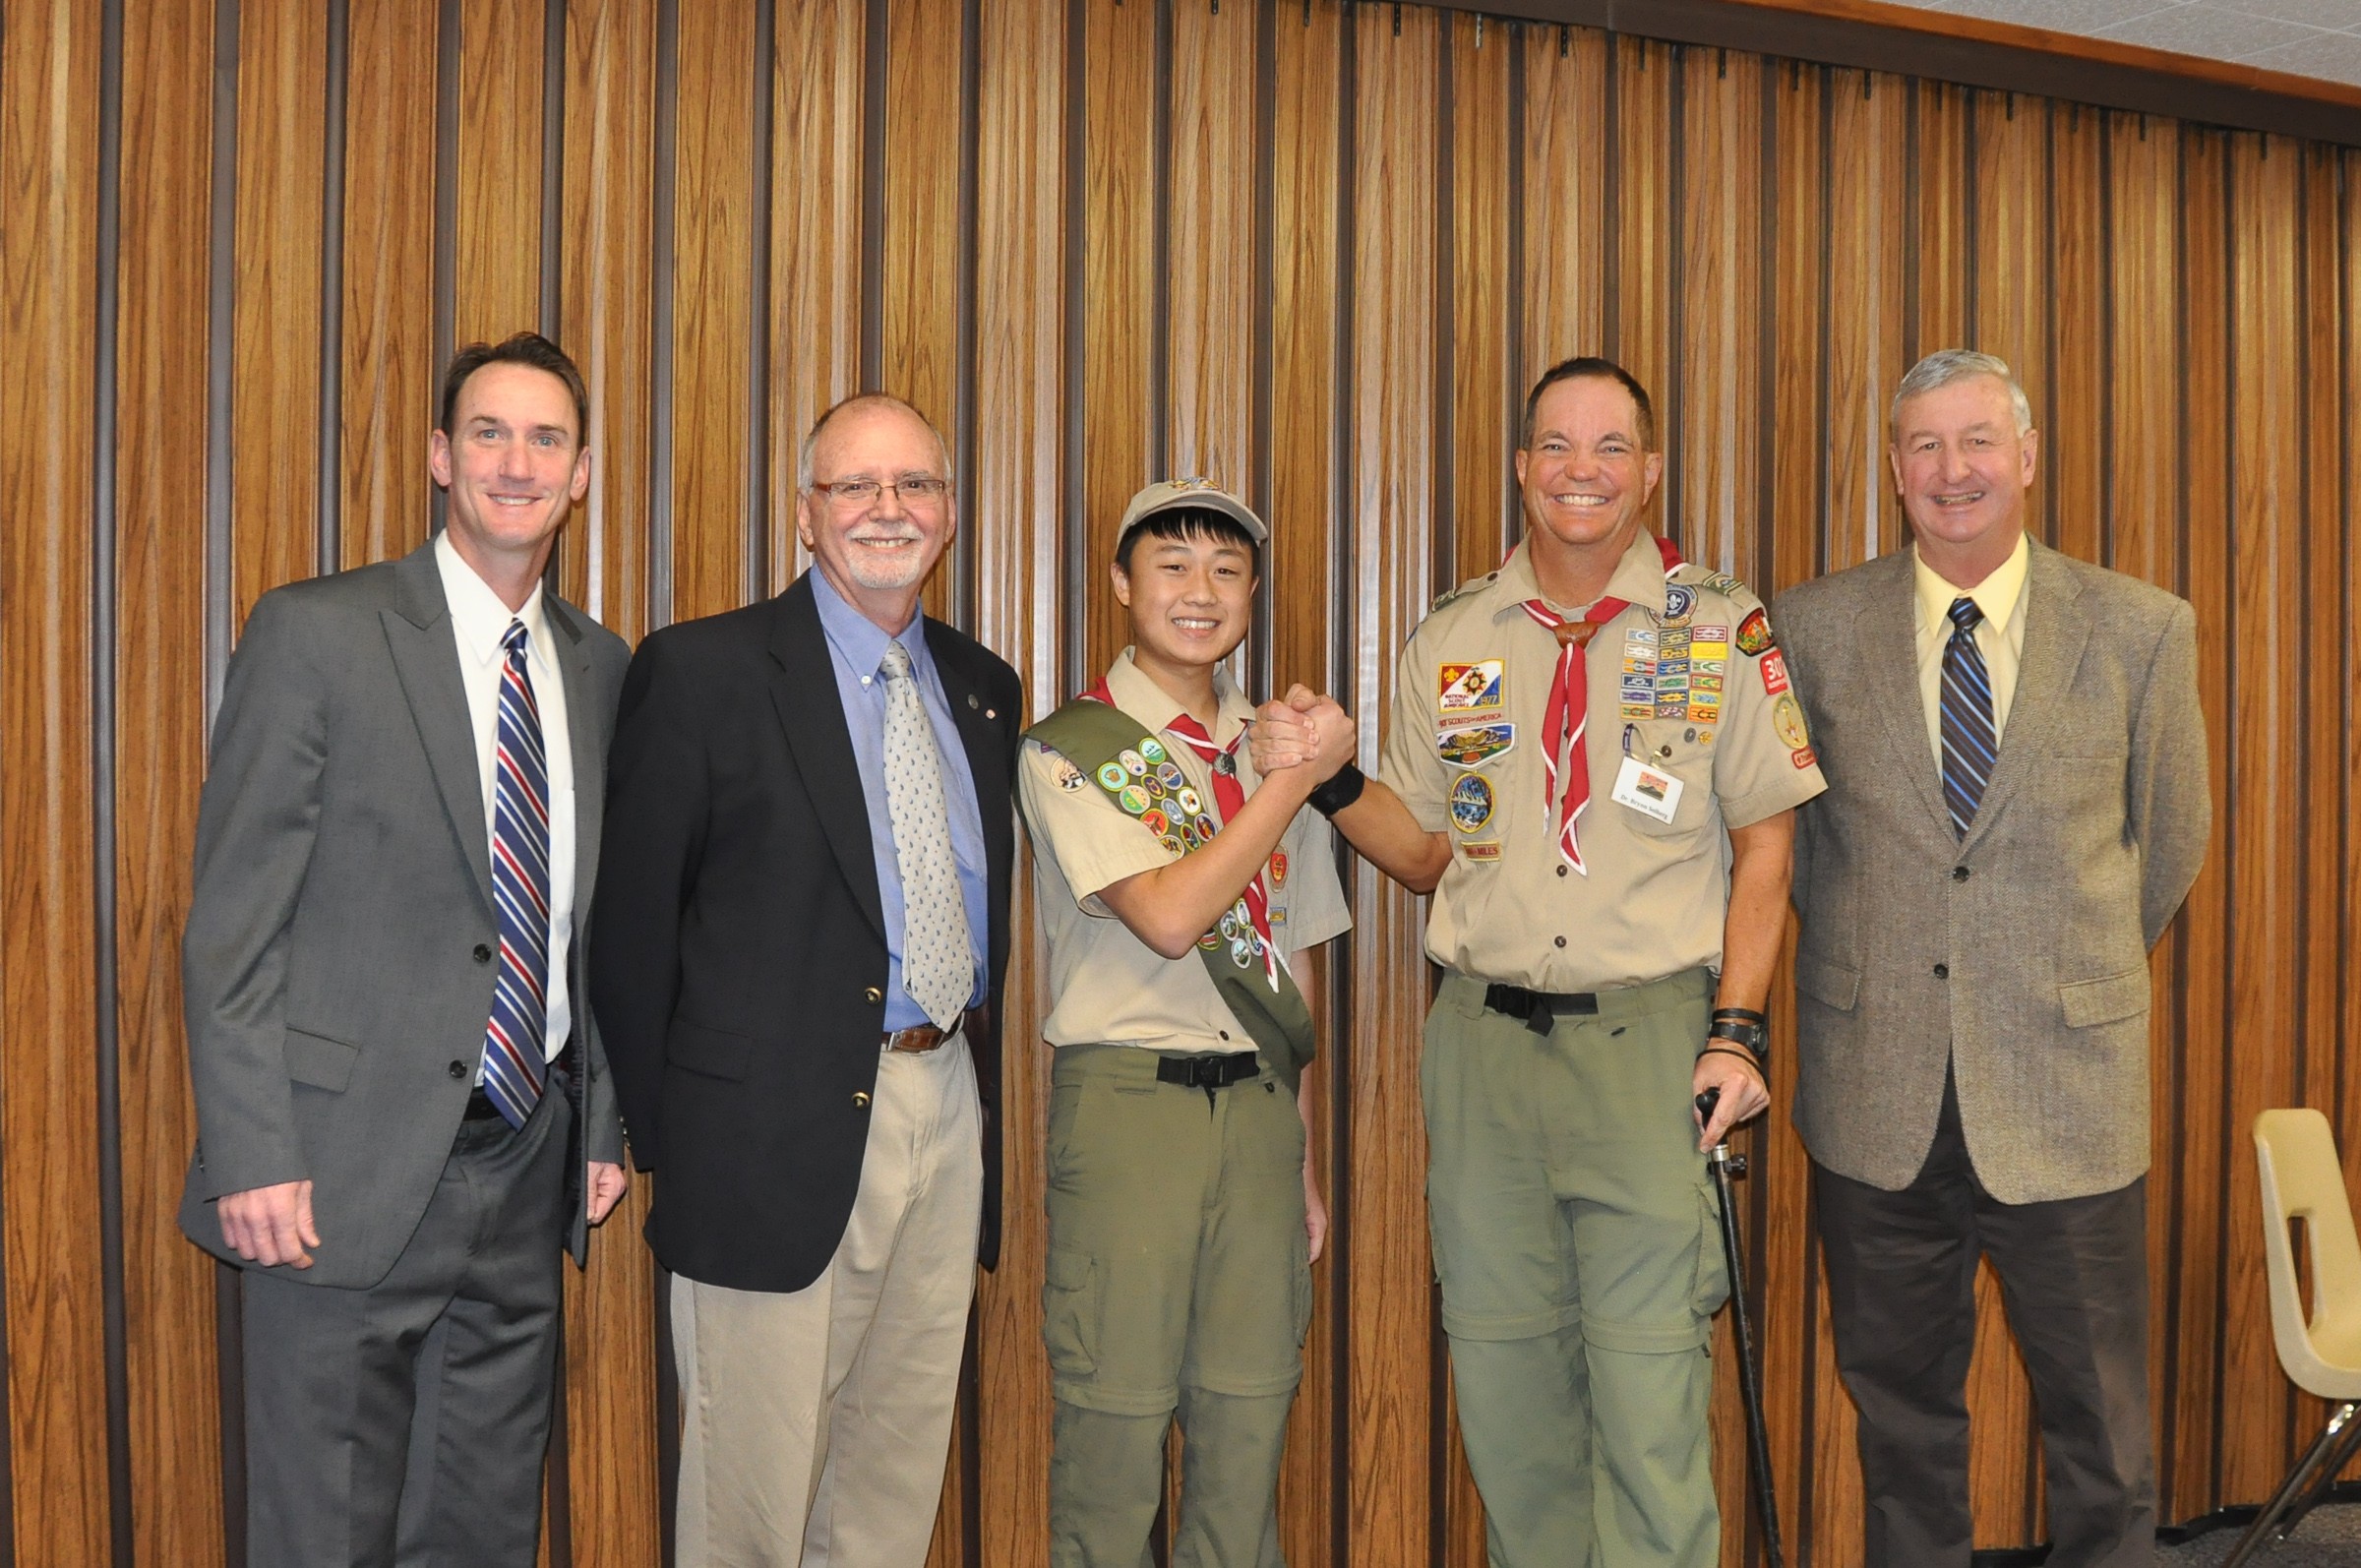 Nathan Khuu earns his Eagle Scout Rank